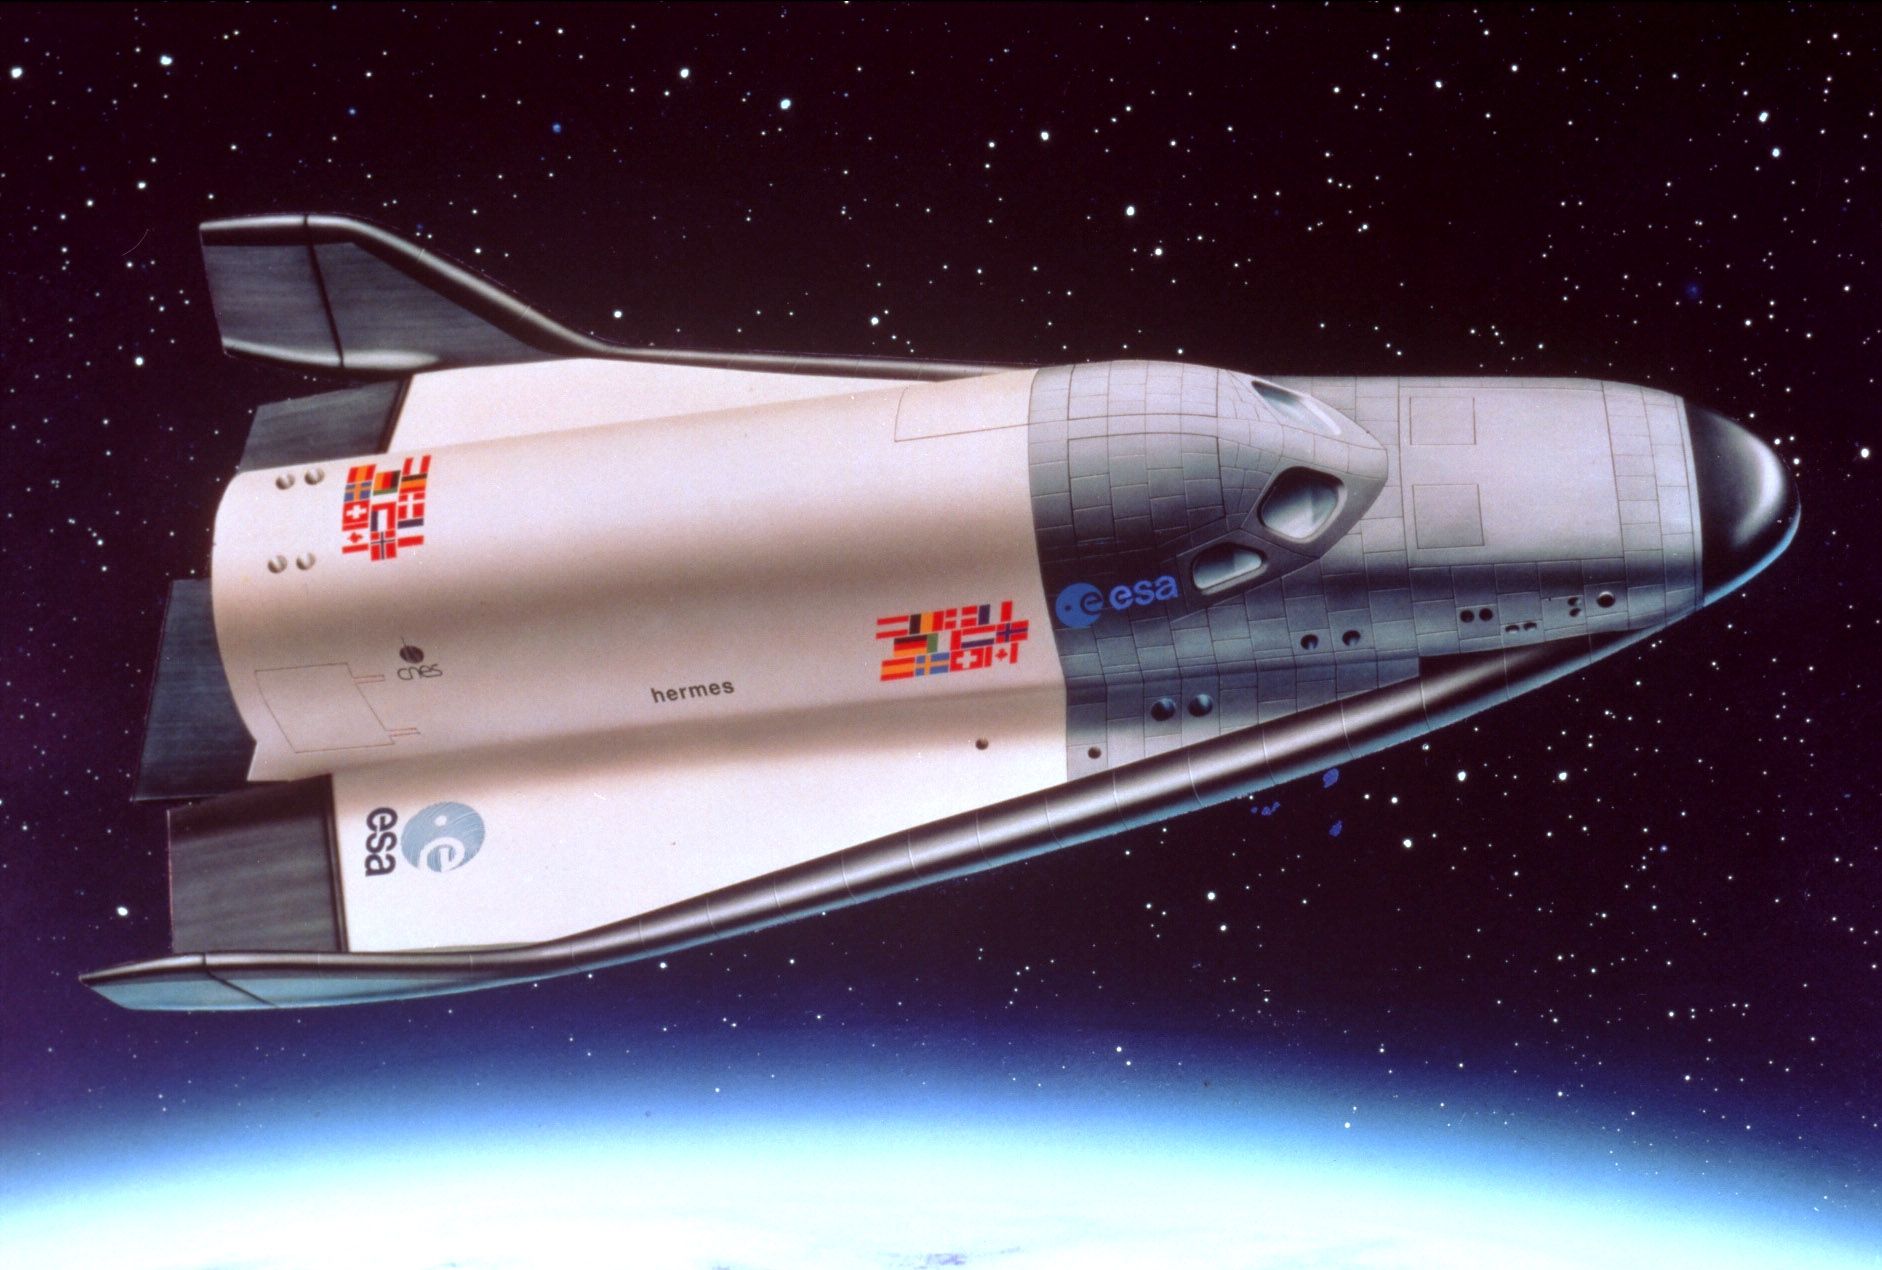 Hermes, Europe's spaceplane, is depicted coasting in orbit in an artist's rendering. Image Credit: European Space Agency (ESA)